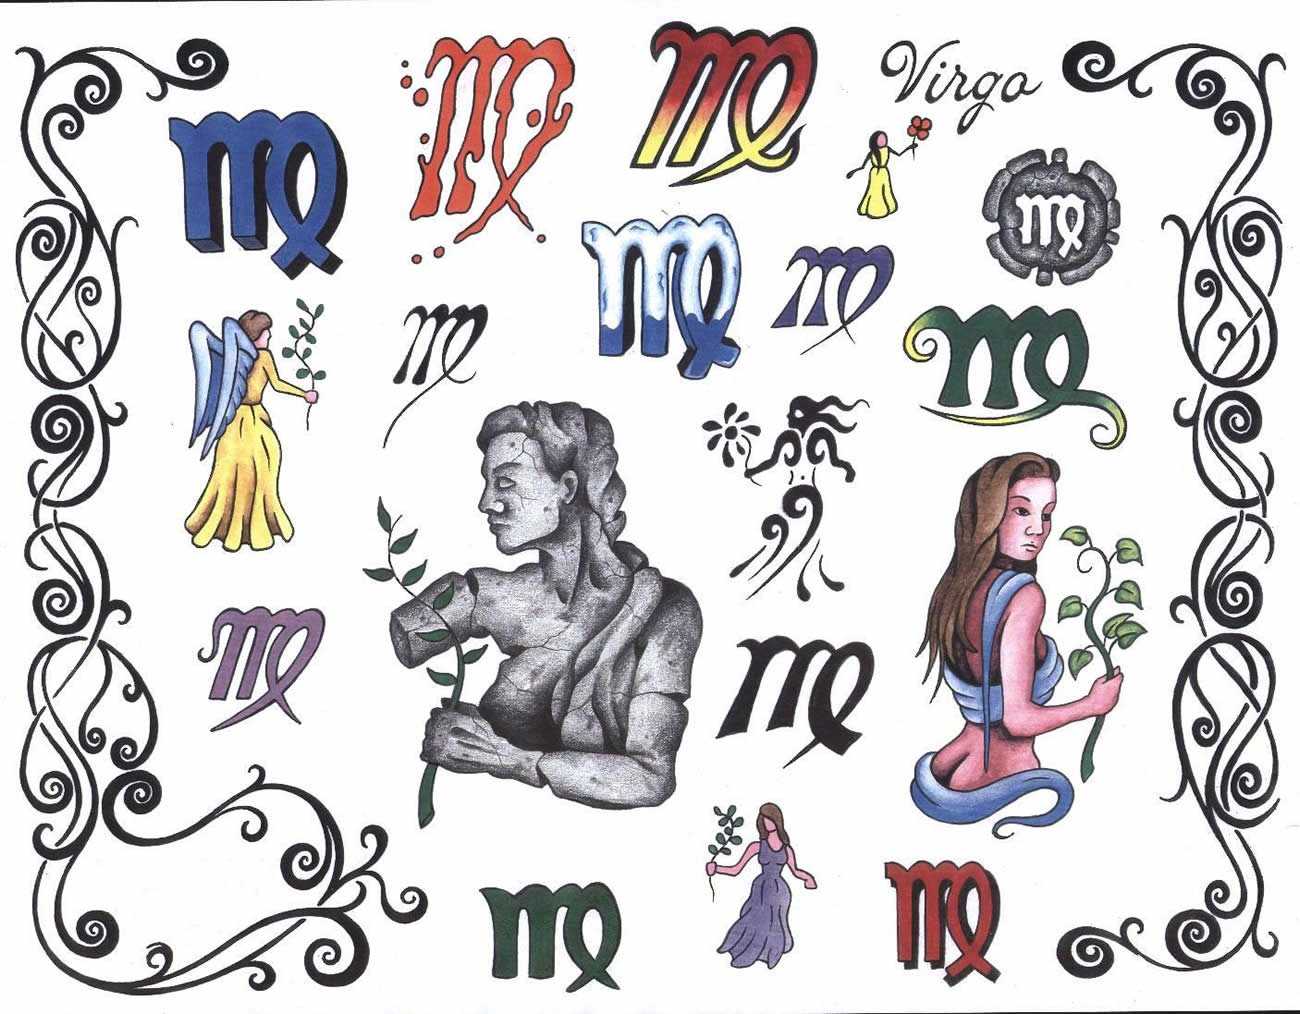 Татуировки на русском языке: крутые идеи для мужчин и женщин на фото